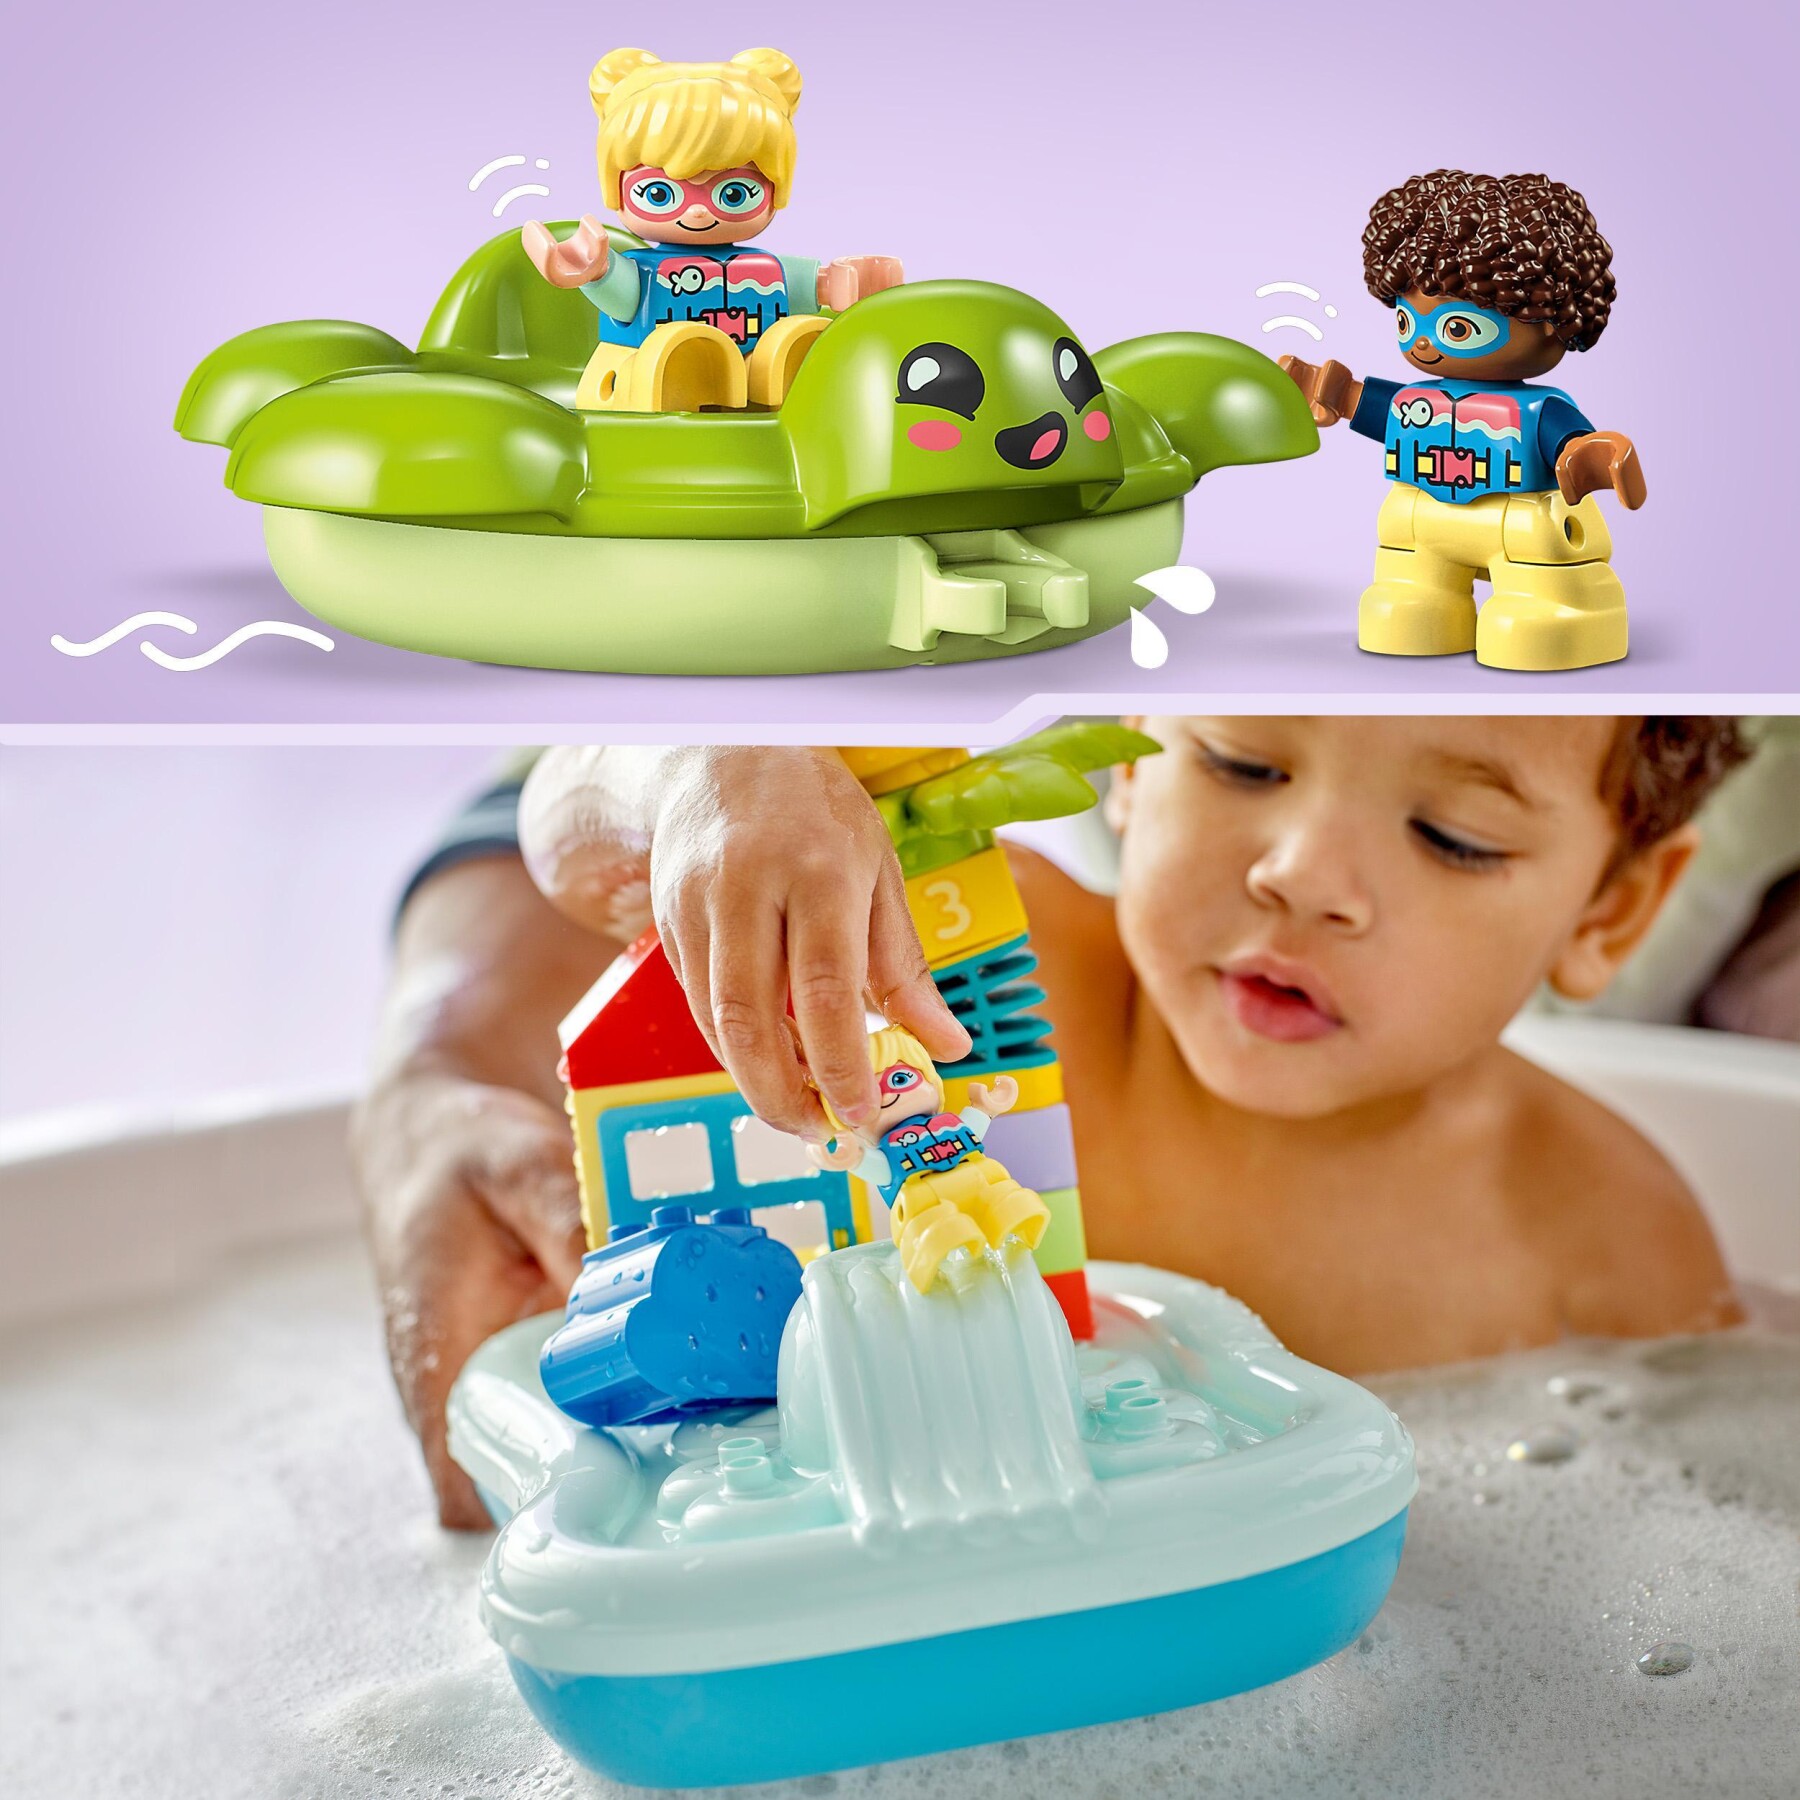 Lego duplo 10989 parco acquatico, giochi da bagnetto per bambini da 2+ anni con isola galleggiante, tartaruga e stella marina - LEGO DUPLO